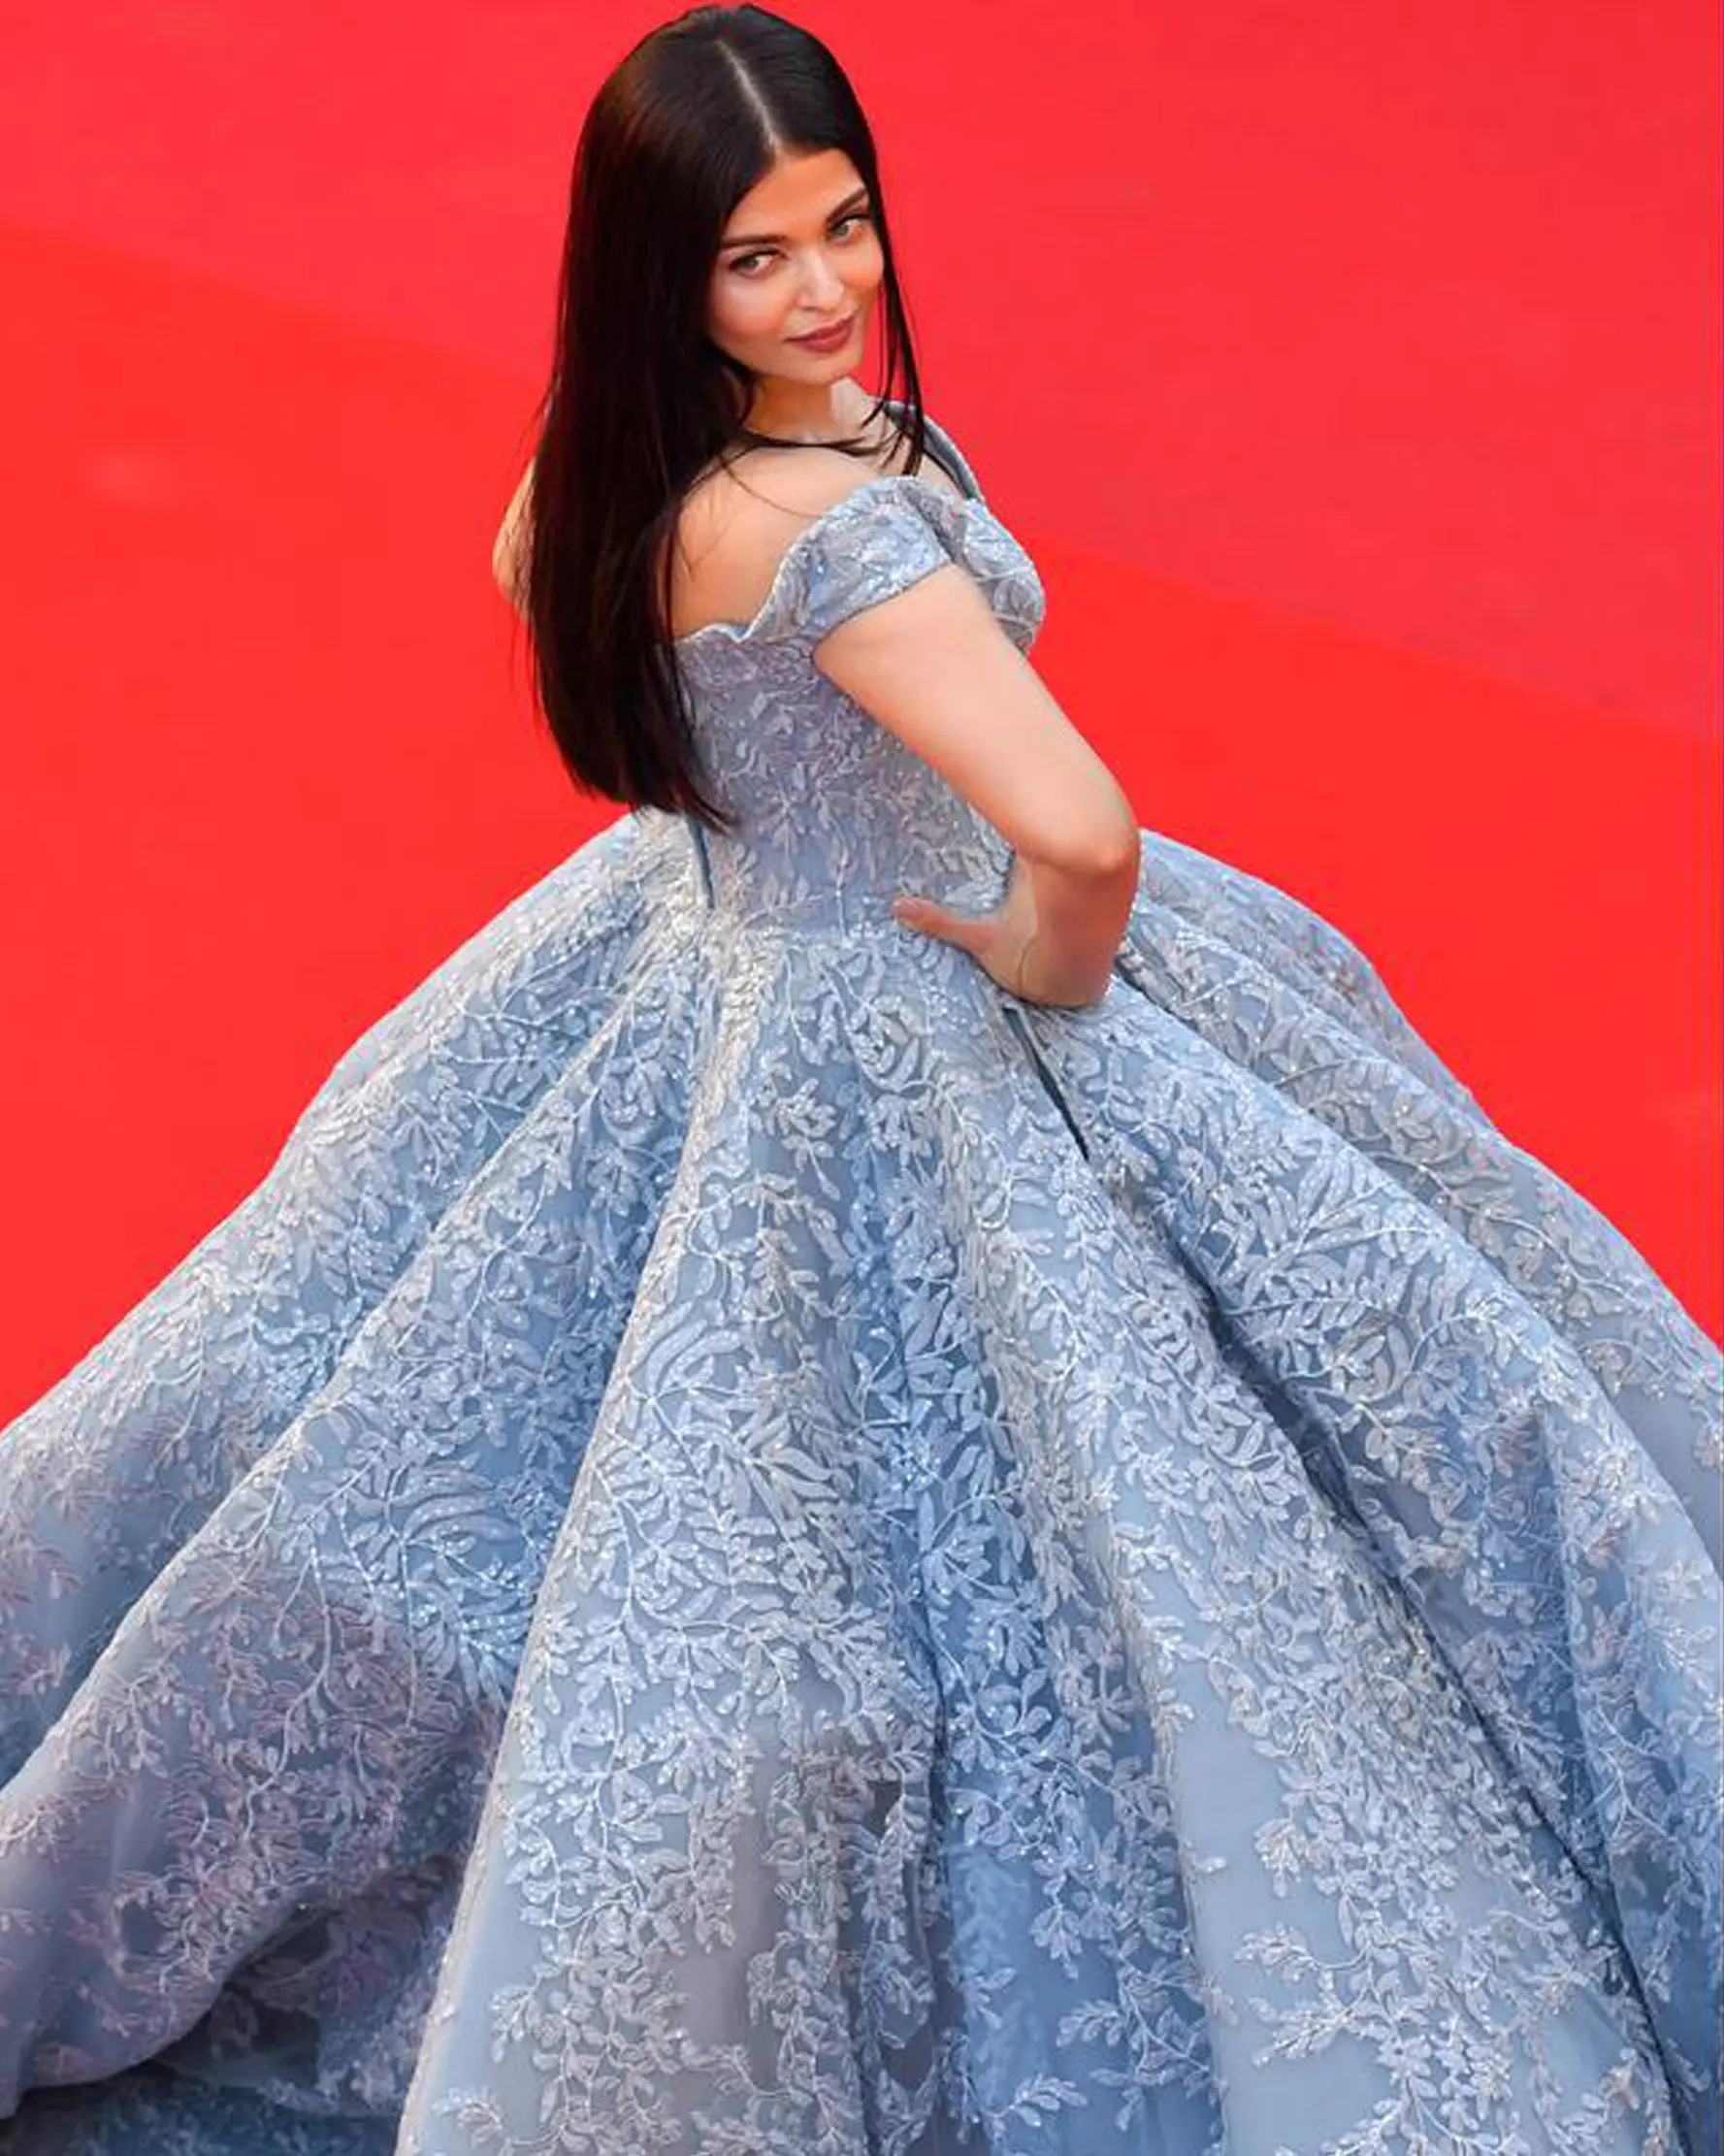 Aktris Bollywood, Aishwarya Rai berpose di depan kamera ketika menghadiri pemutaran film Okja pada Festival Film Cannes 2017, 19 Mei 2017. Mengenakan dress biru megah bak princess, Aishwarya mengingatkan pada sosok Cinderella. (LOIC VENANCE/AFP)